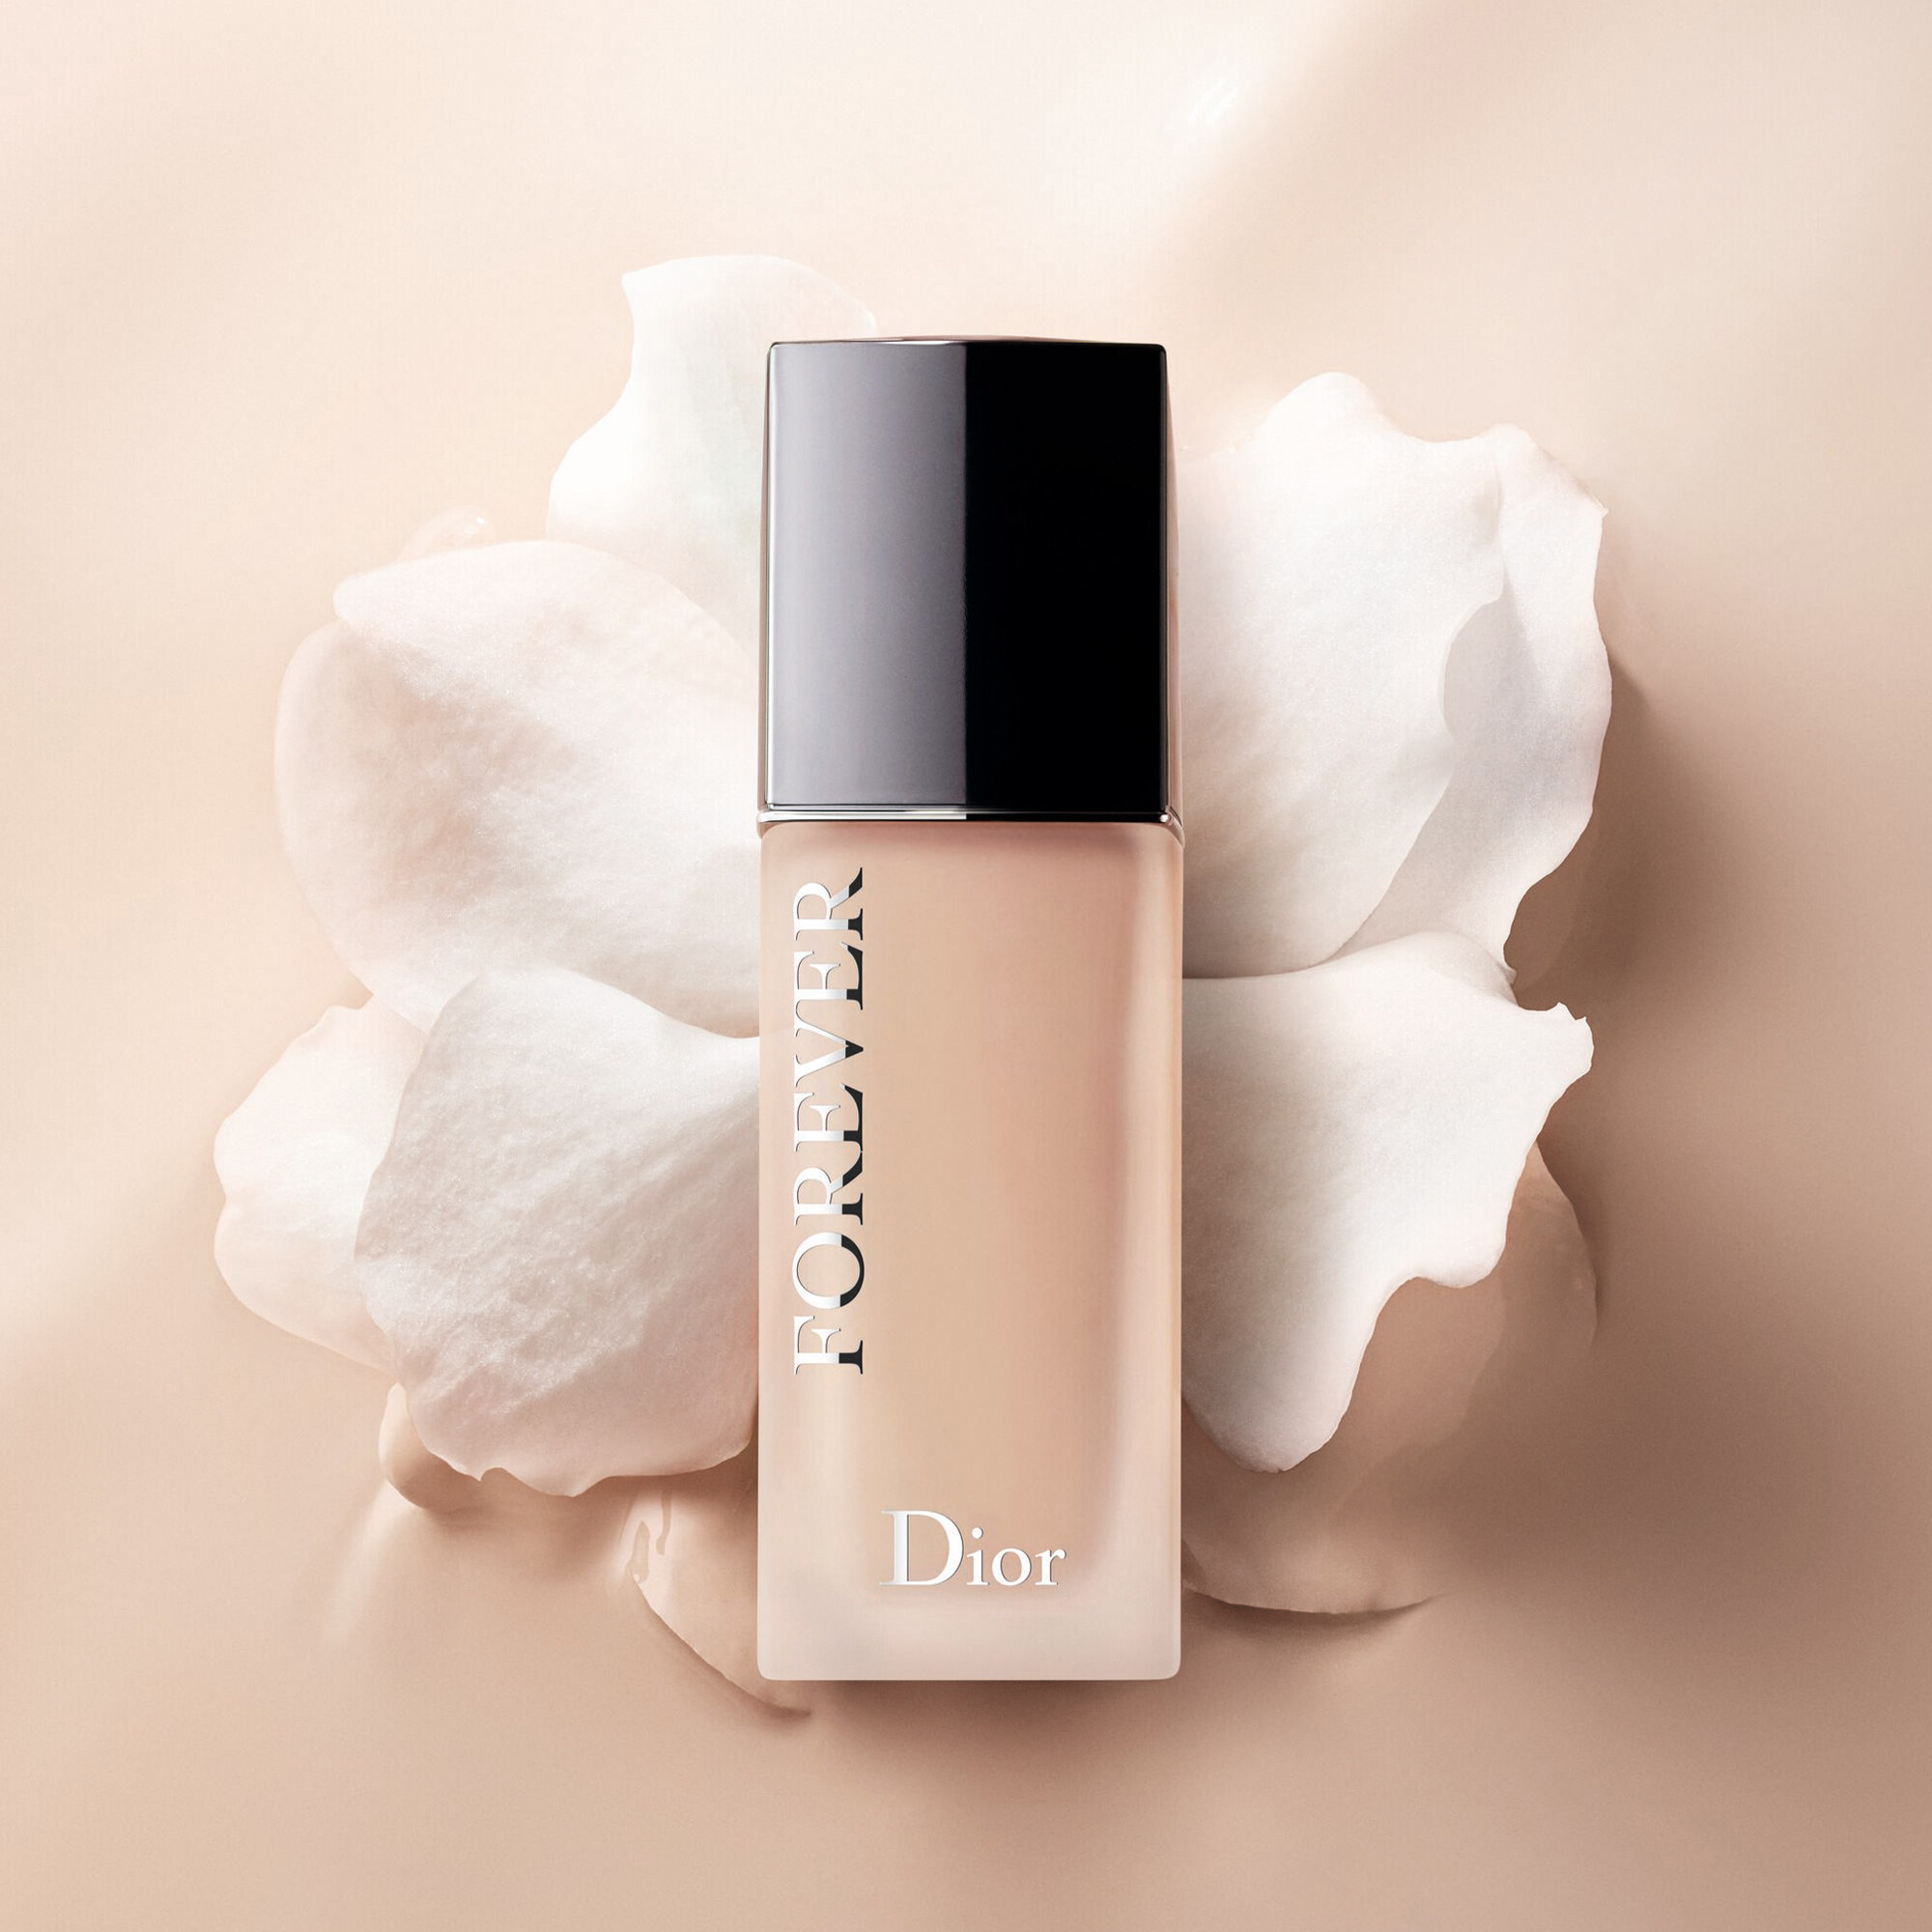 持久啞緻底妝節奏急促的生活，讓都市女生對粉底液的要求特別高，Dior恆